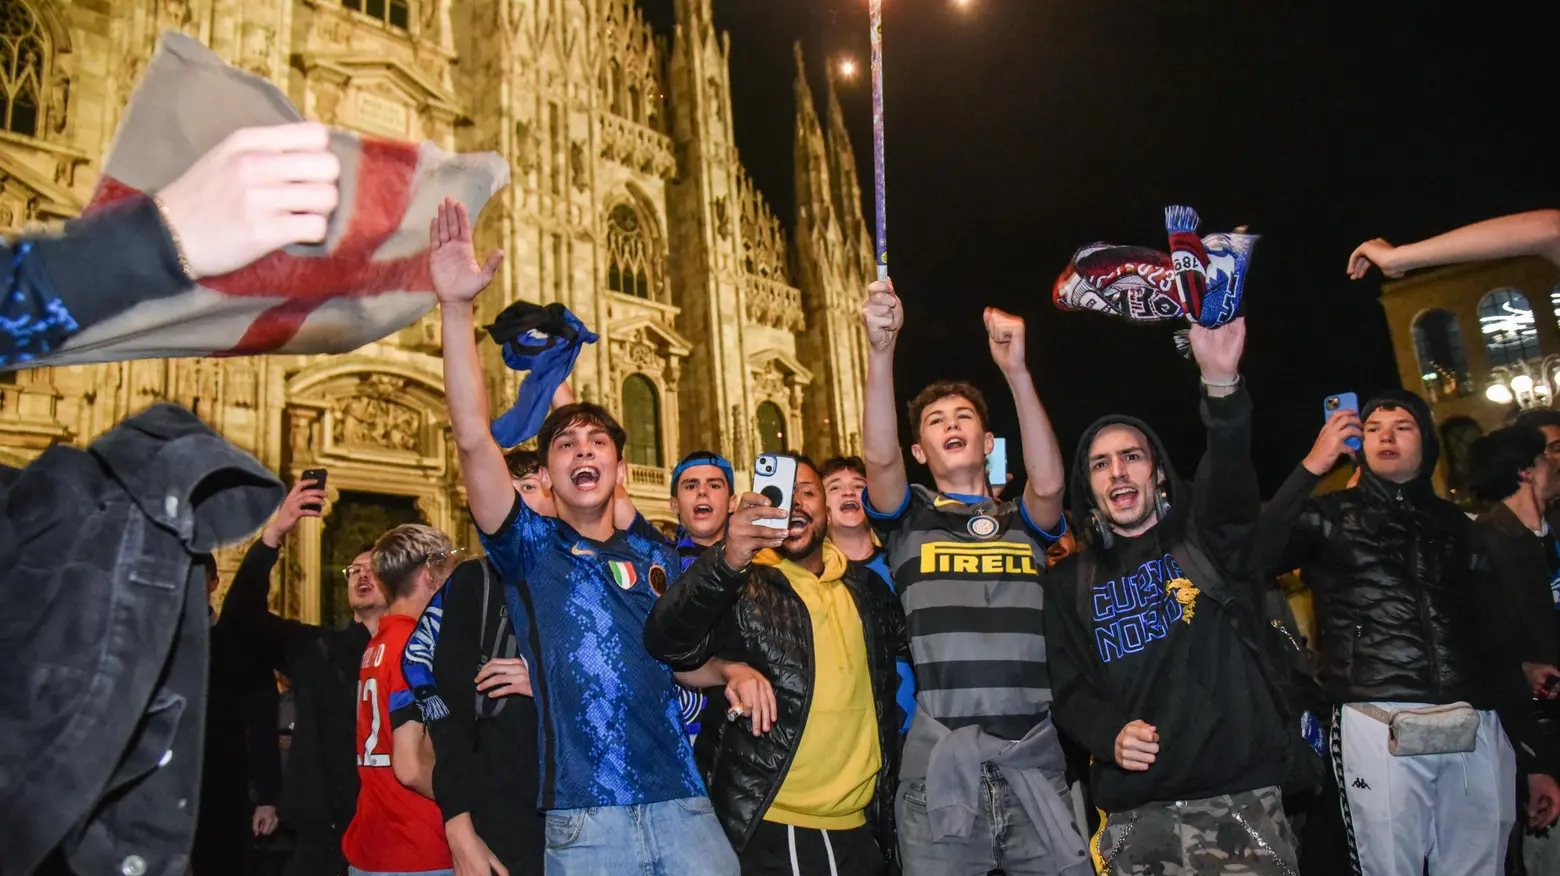 Festeggiamenti dei tifosi interisti in piazza Duomo dopo la semifinale di Champions vinta contro il Milan